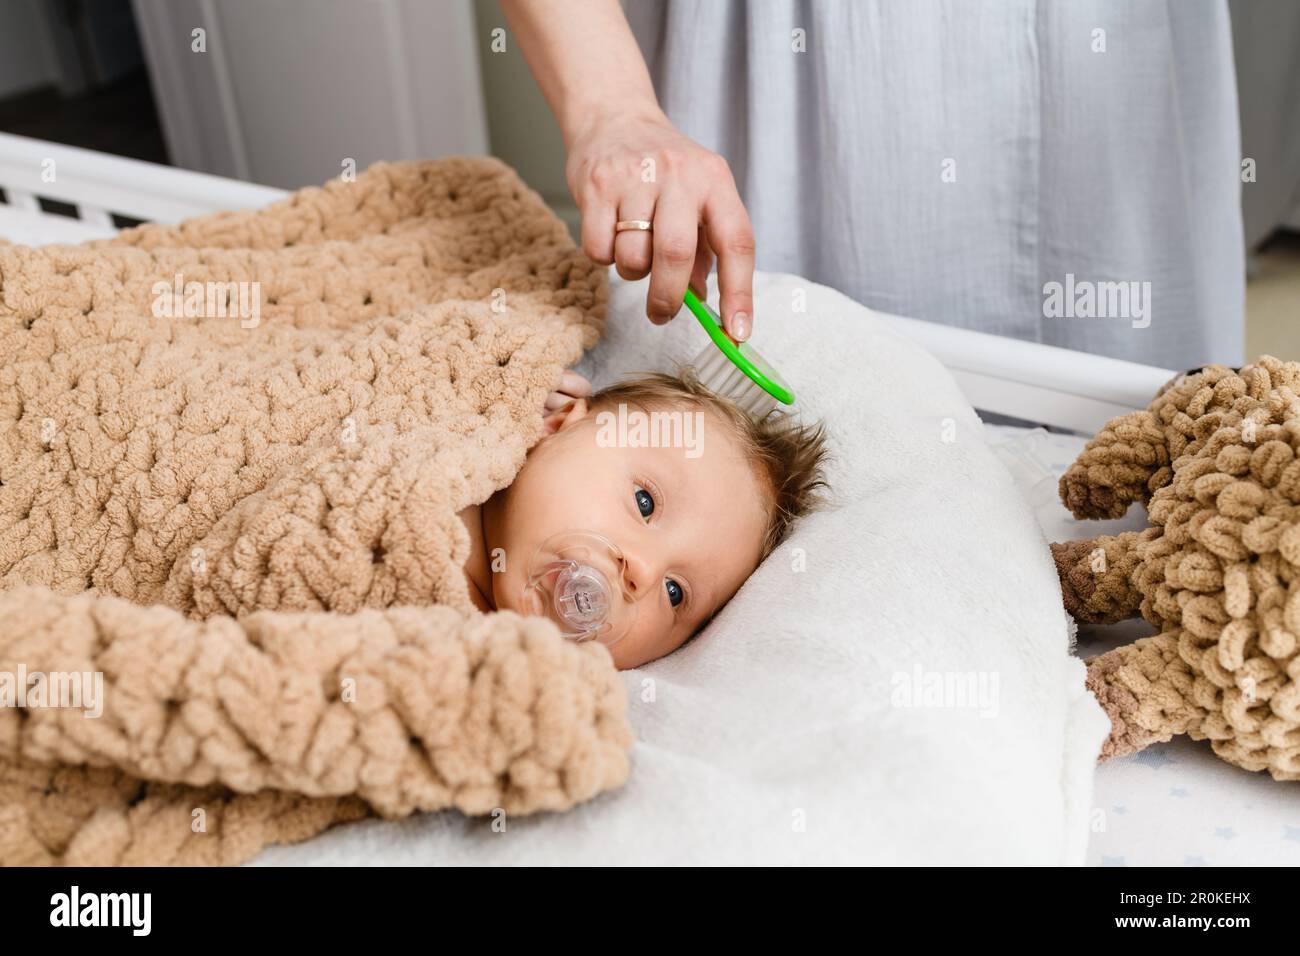 Spazzola a mano della madre i primi capelli del neonato, il bambino è adagiato in una culla coperta morbida e intima e succhiata, succhietto, piumino Foto Stock